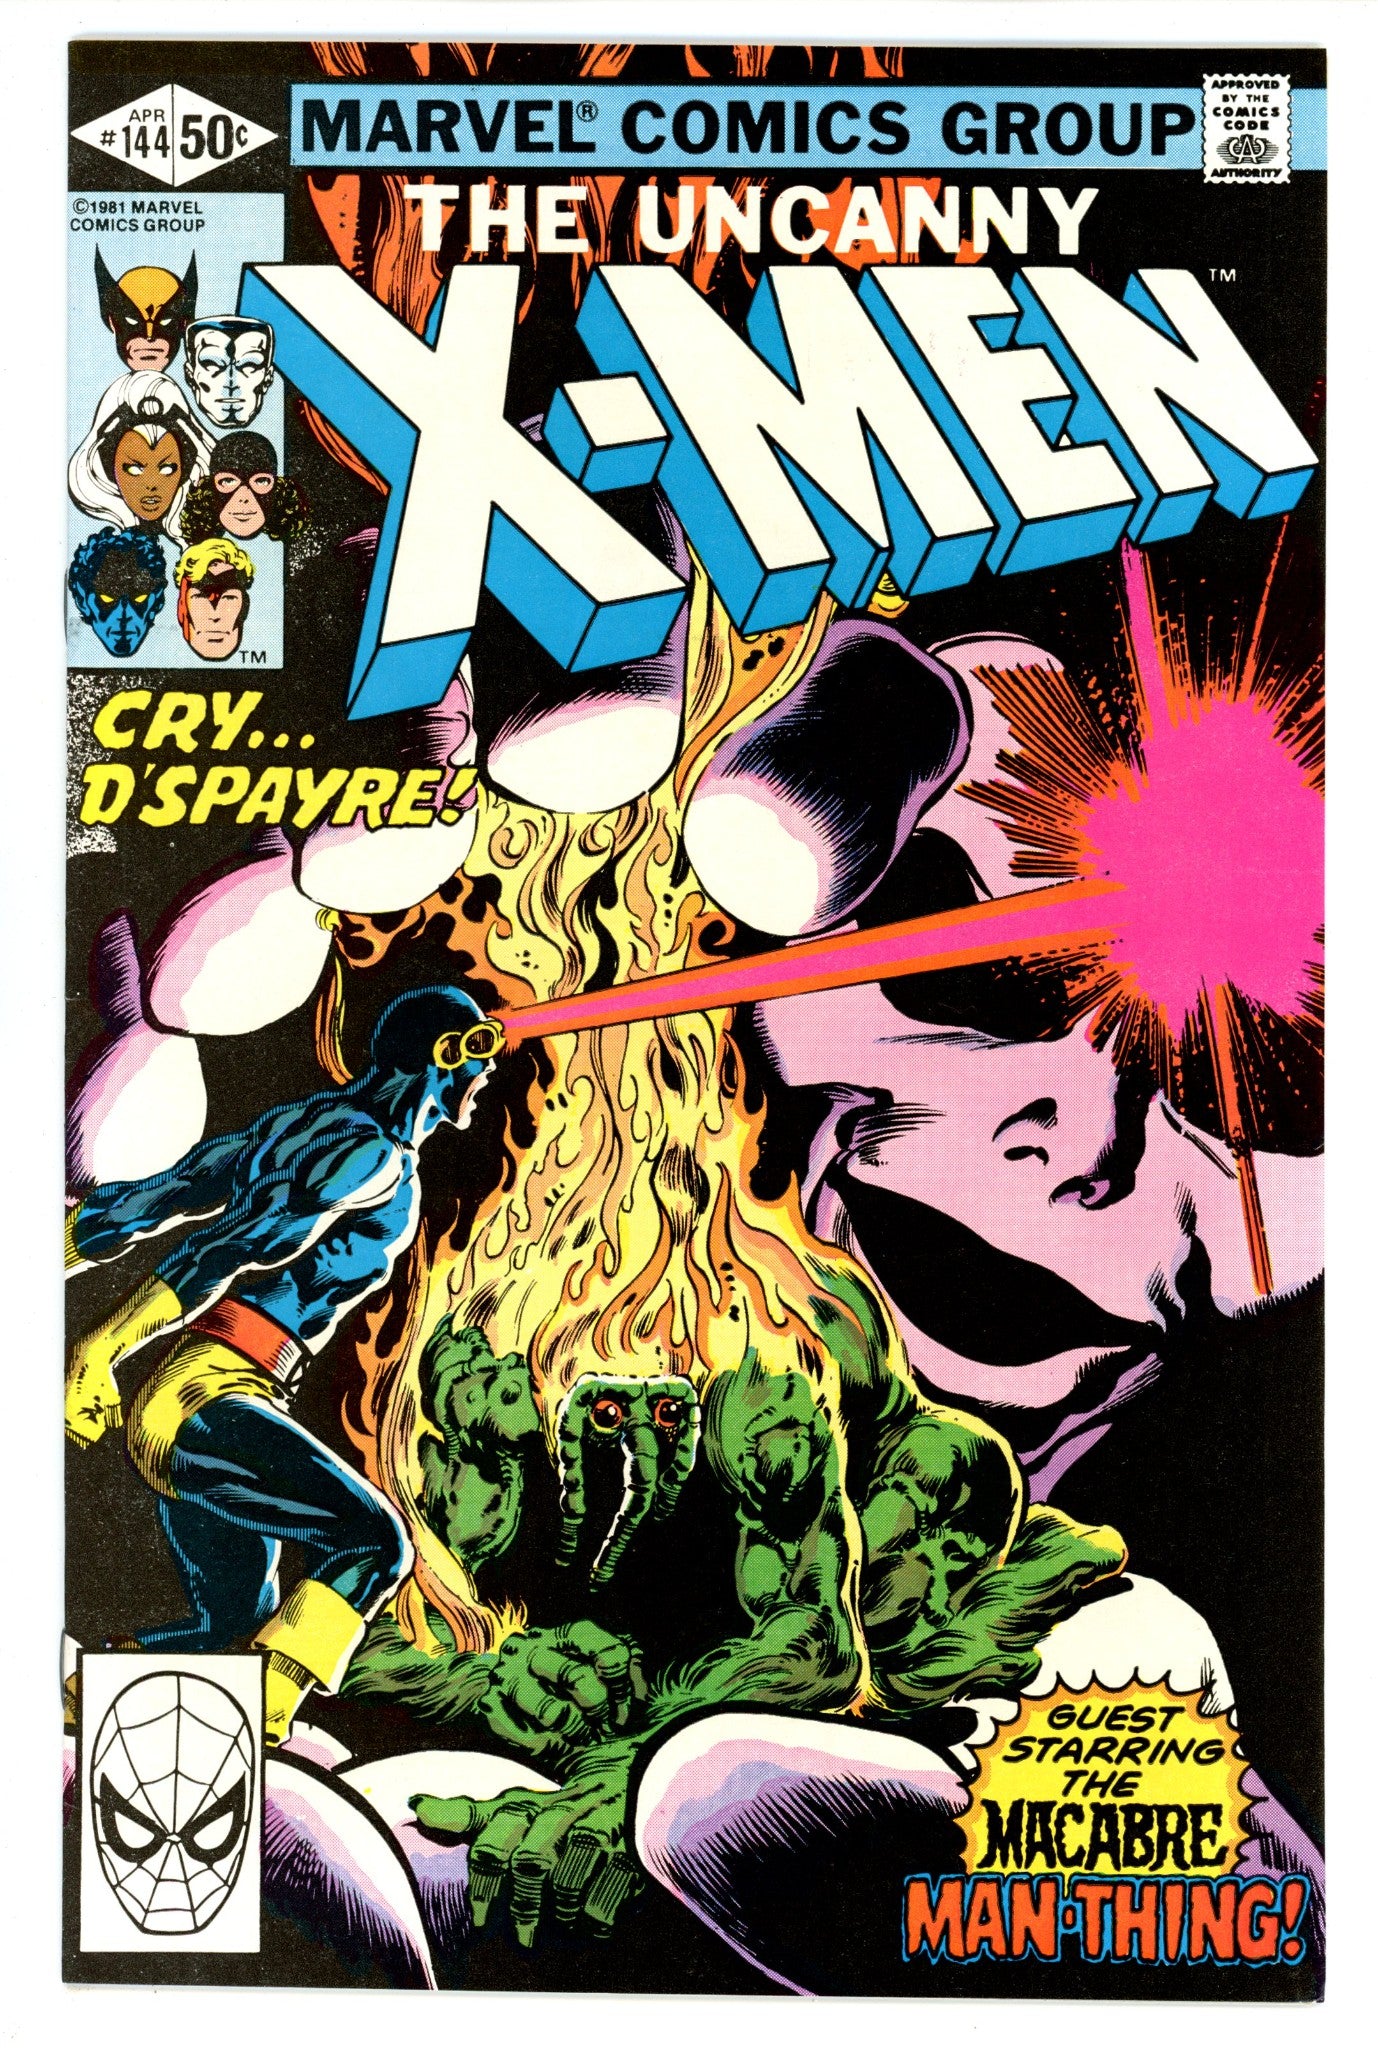 The Uncanny X-Men Vol 1 144 VF+ (8.5) (1981) 